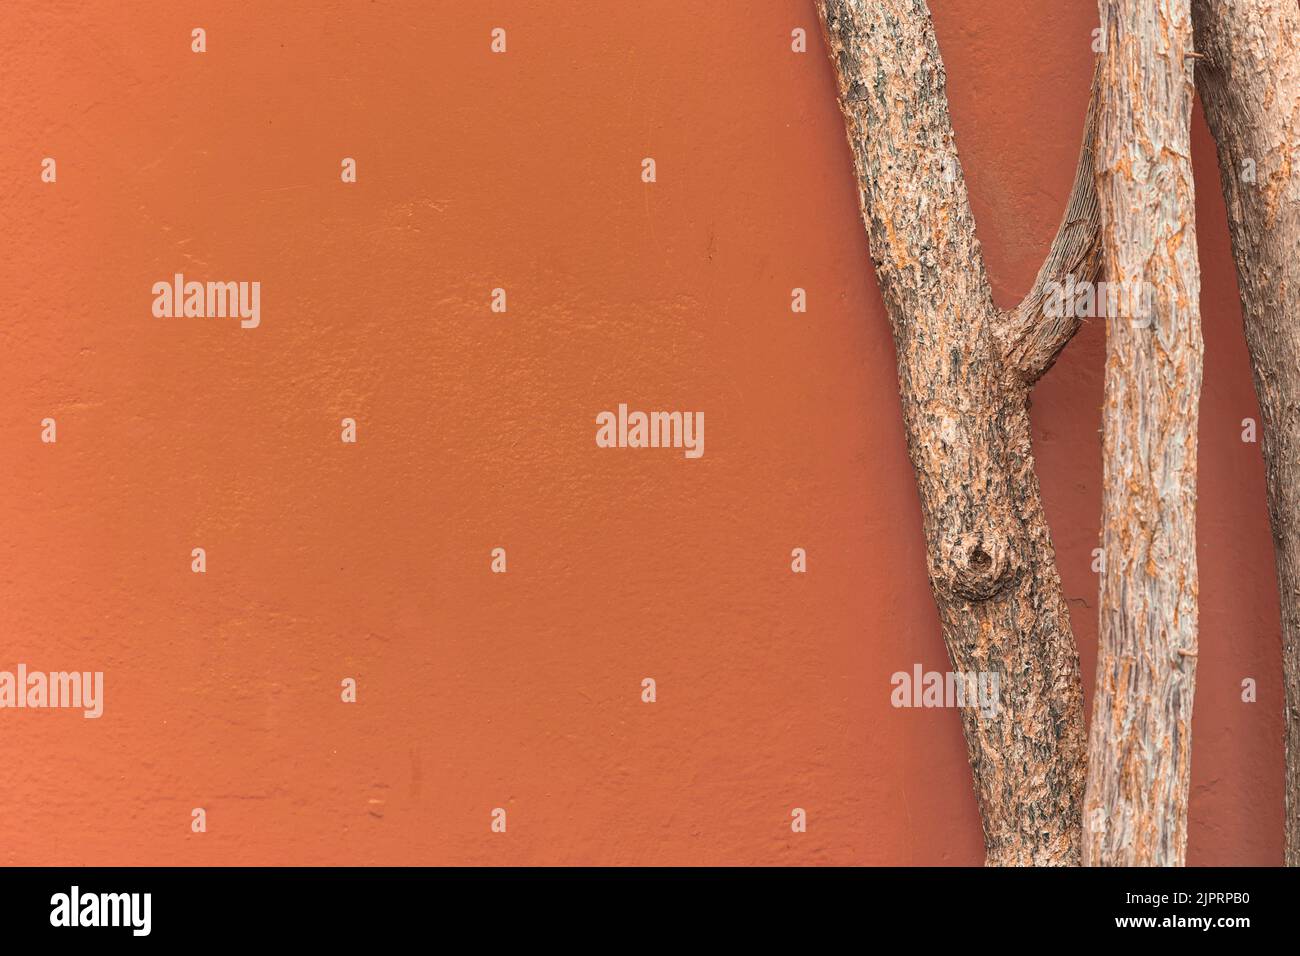 Paysage urbain d'automne minimaliste avec mur en stuc brun ocre et tronc en bois avec espace pour copier. Ancienne décoration en bois pointu avec bac mural en stuc brun Banque D'Images